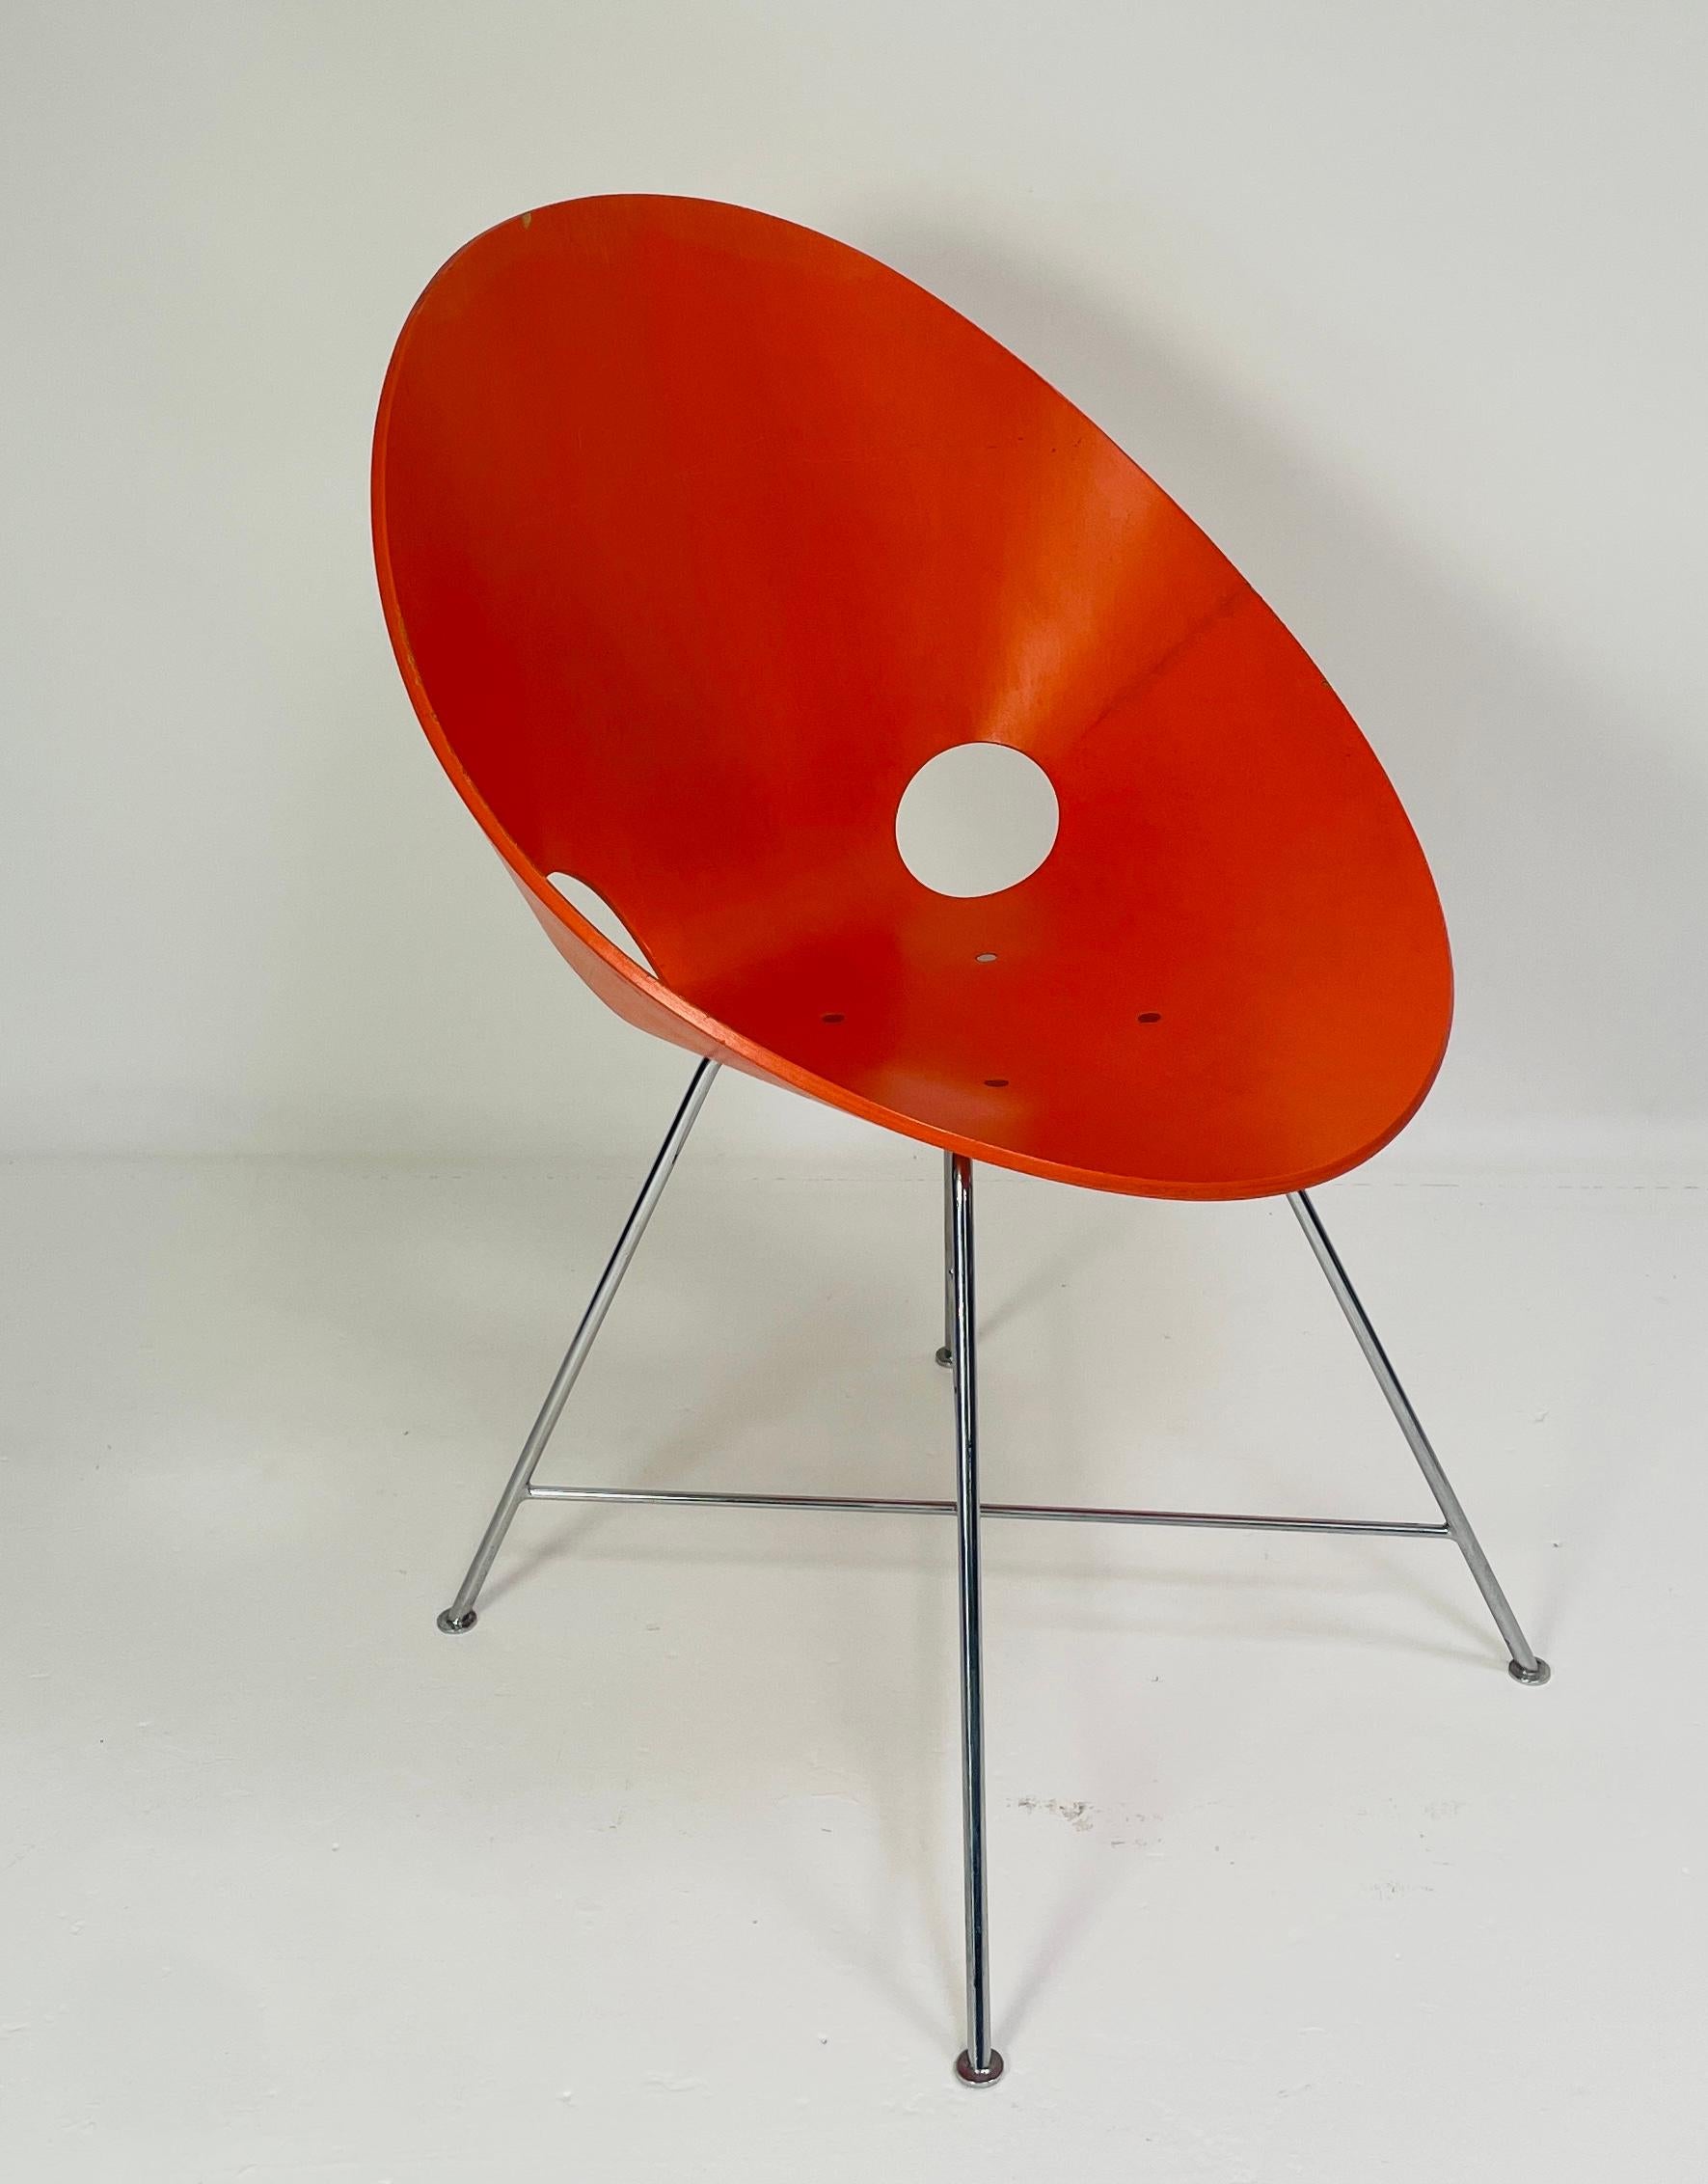 Der Stuhl ST 664, entworfen von Eddie Harlis im Jahr 1954. Thonet stellte die Stühle in Deutschland her. Diese Stühle werden nicht mehr hergestellt. Die  Der Stuhl ist orange lackiert und aus gebogenem Sperrholz (Buche) gefertigt. Die Beine sind aus